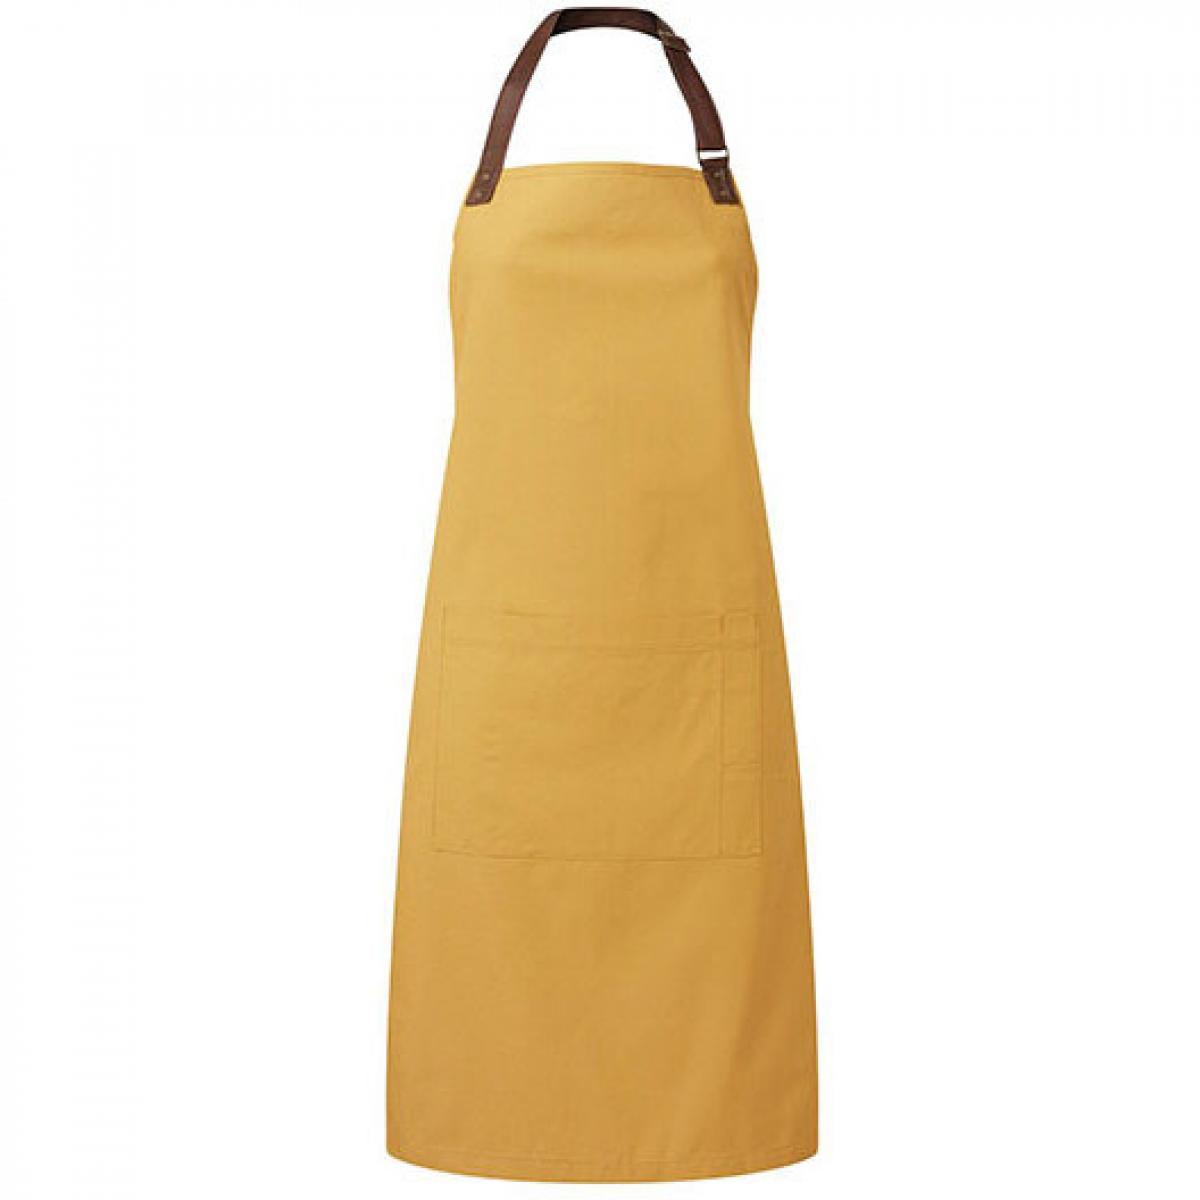 Hersteller: Premier Workwear Herstellernummer: PR144 Artikelbezeichnung: Latzschürze Annex Oxford Bib Apron, 72 x 86 cm Farbe: Mustard (ca. Pantone 7405)